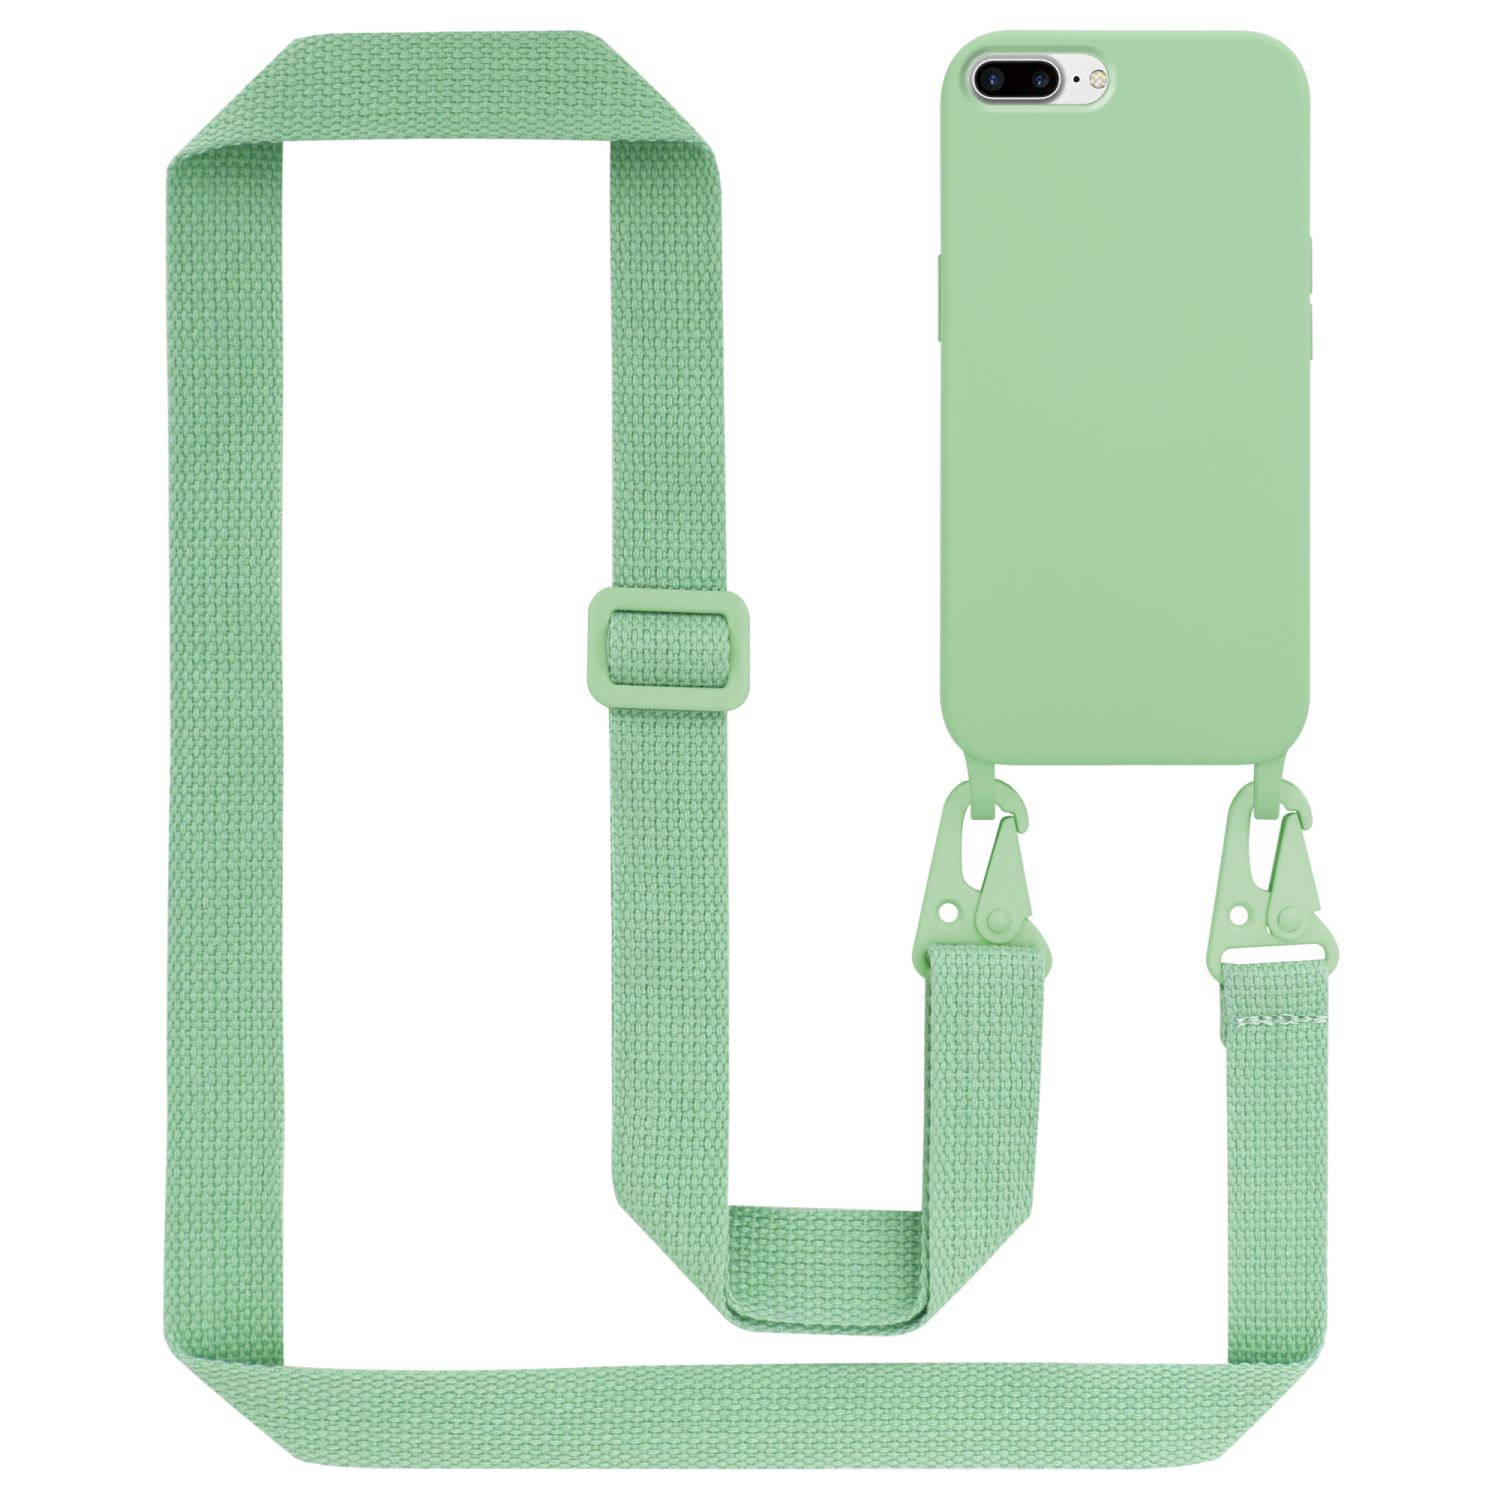 Cadorabo Mobiele telefoon ketting voor Apple iPhone 7 PLUS / 7S PLUS / 8 PLUS in LIQUID LICHT GROEN - Silicone beschermhoes met lengte verstelbare koord riem